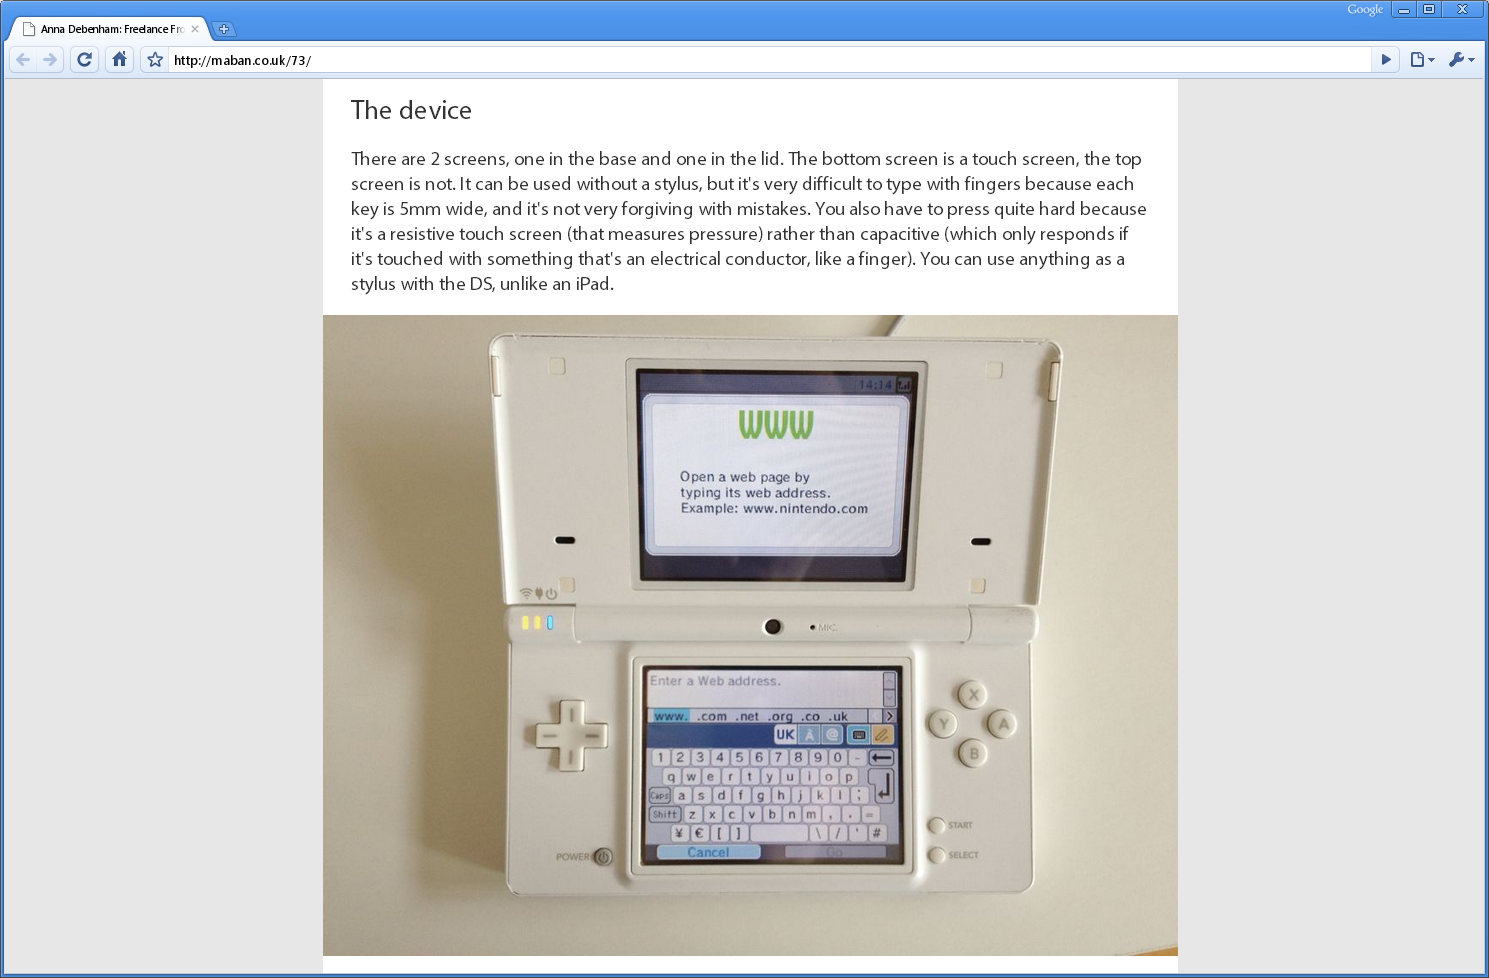 Статья Анны Дебенэм про Nintendo DSi